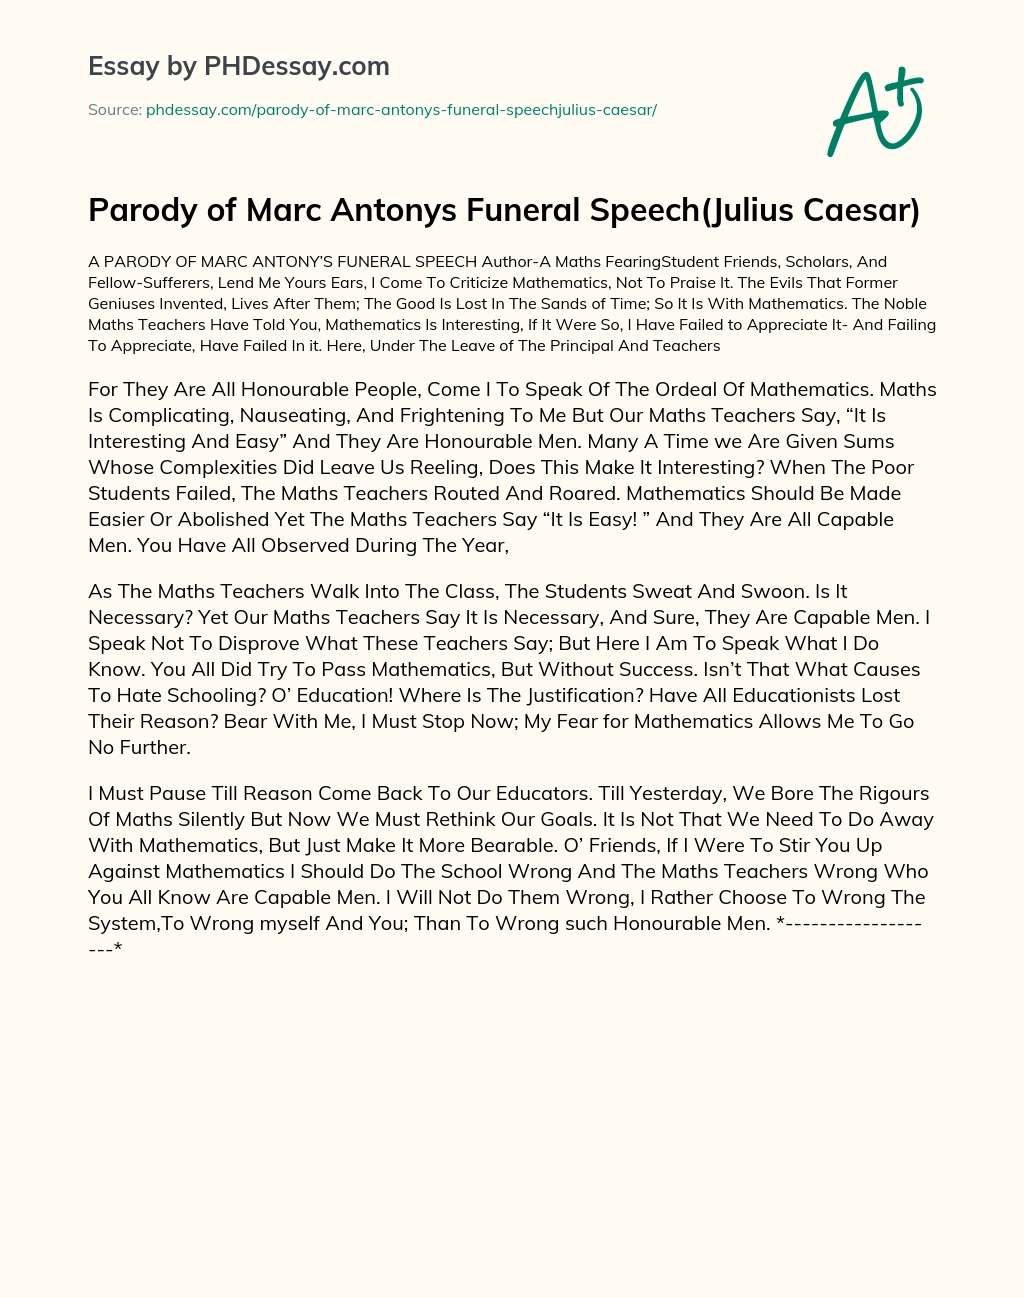 Parody of Marc Antonys Funeral Speech(Julius Caesar) essay